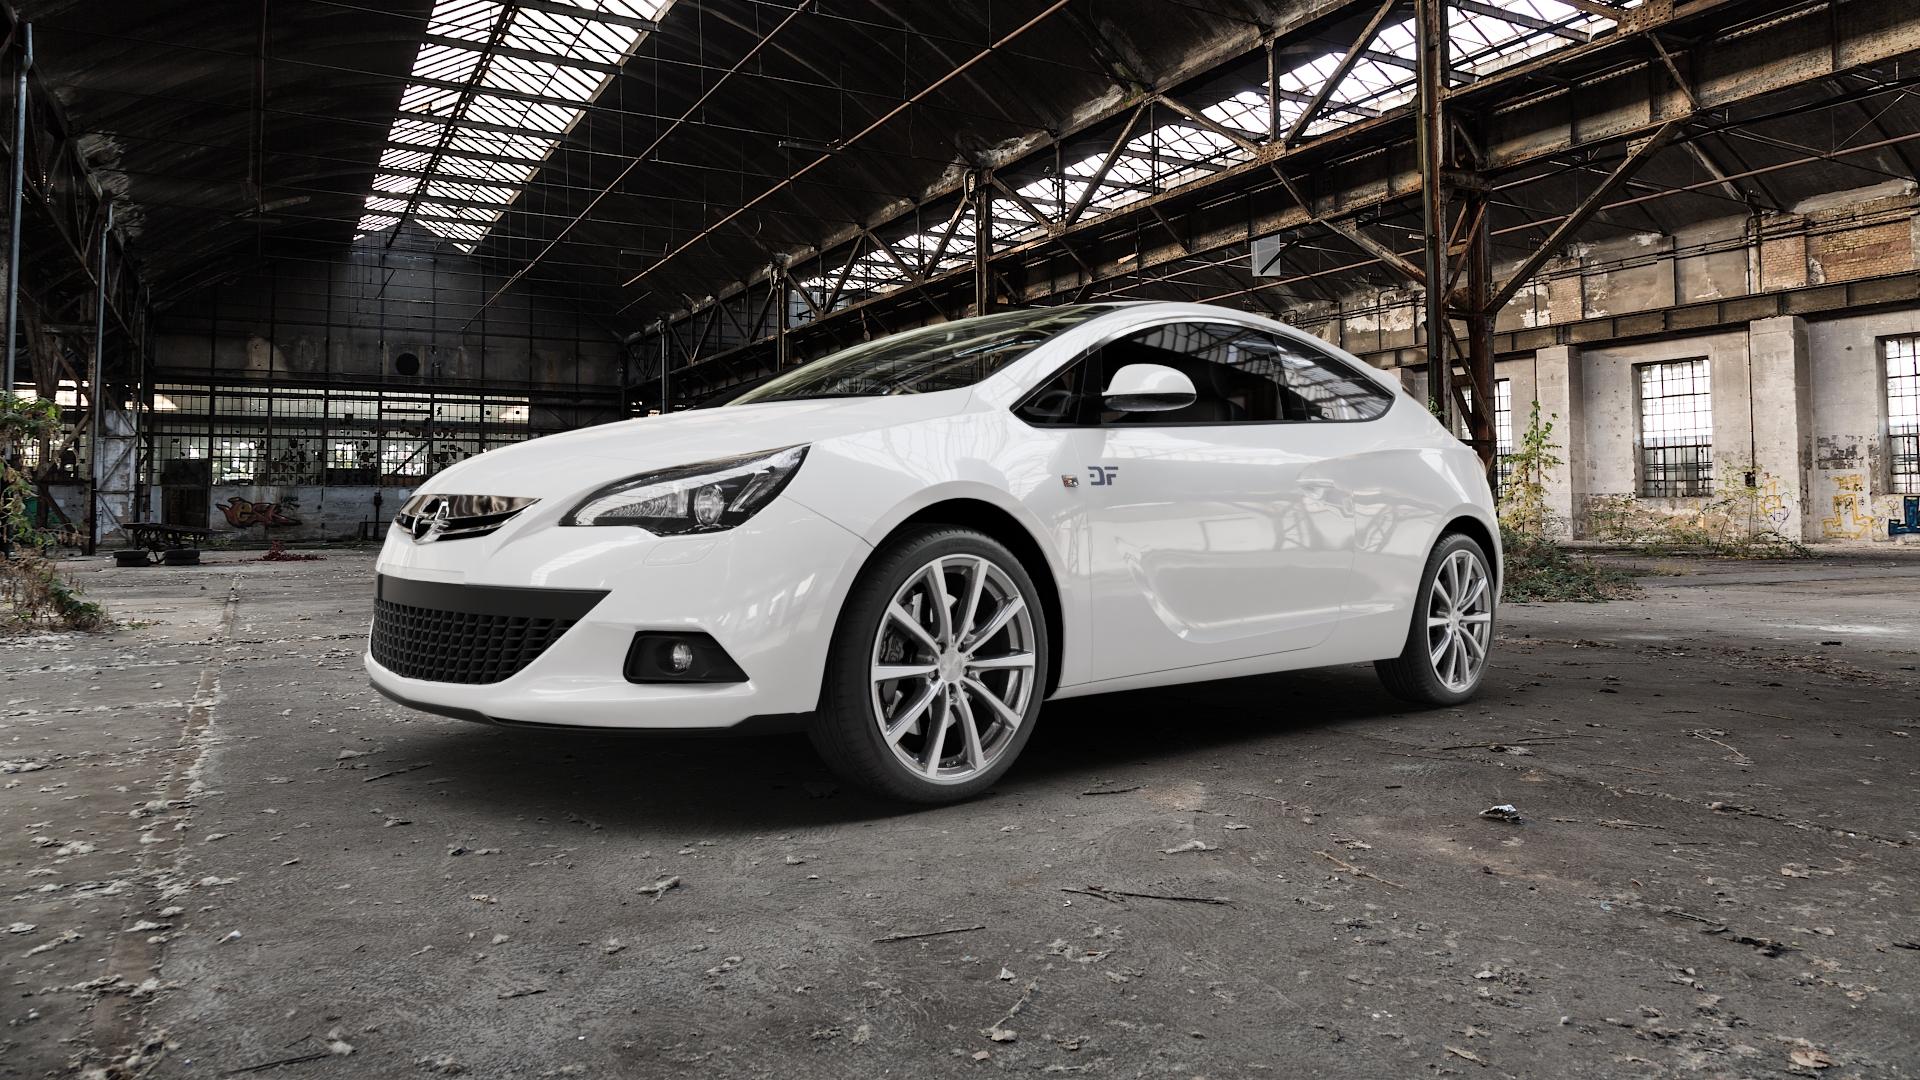 Unsere besten Produkte - Finden Sie hier die Opel astra j opc felgen entsprechend Ihrer Wünsche